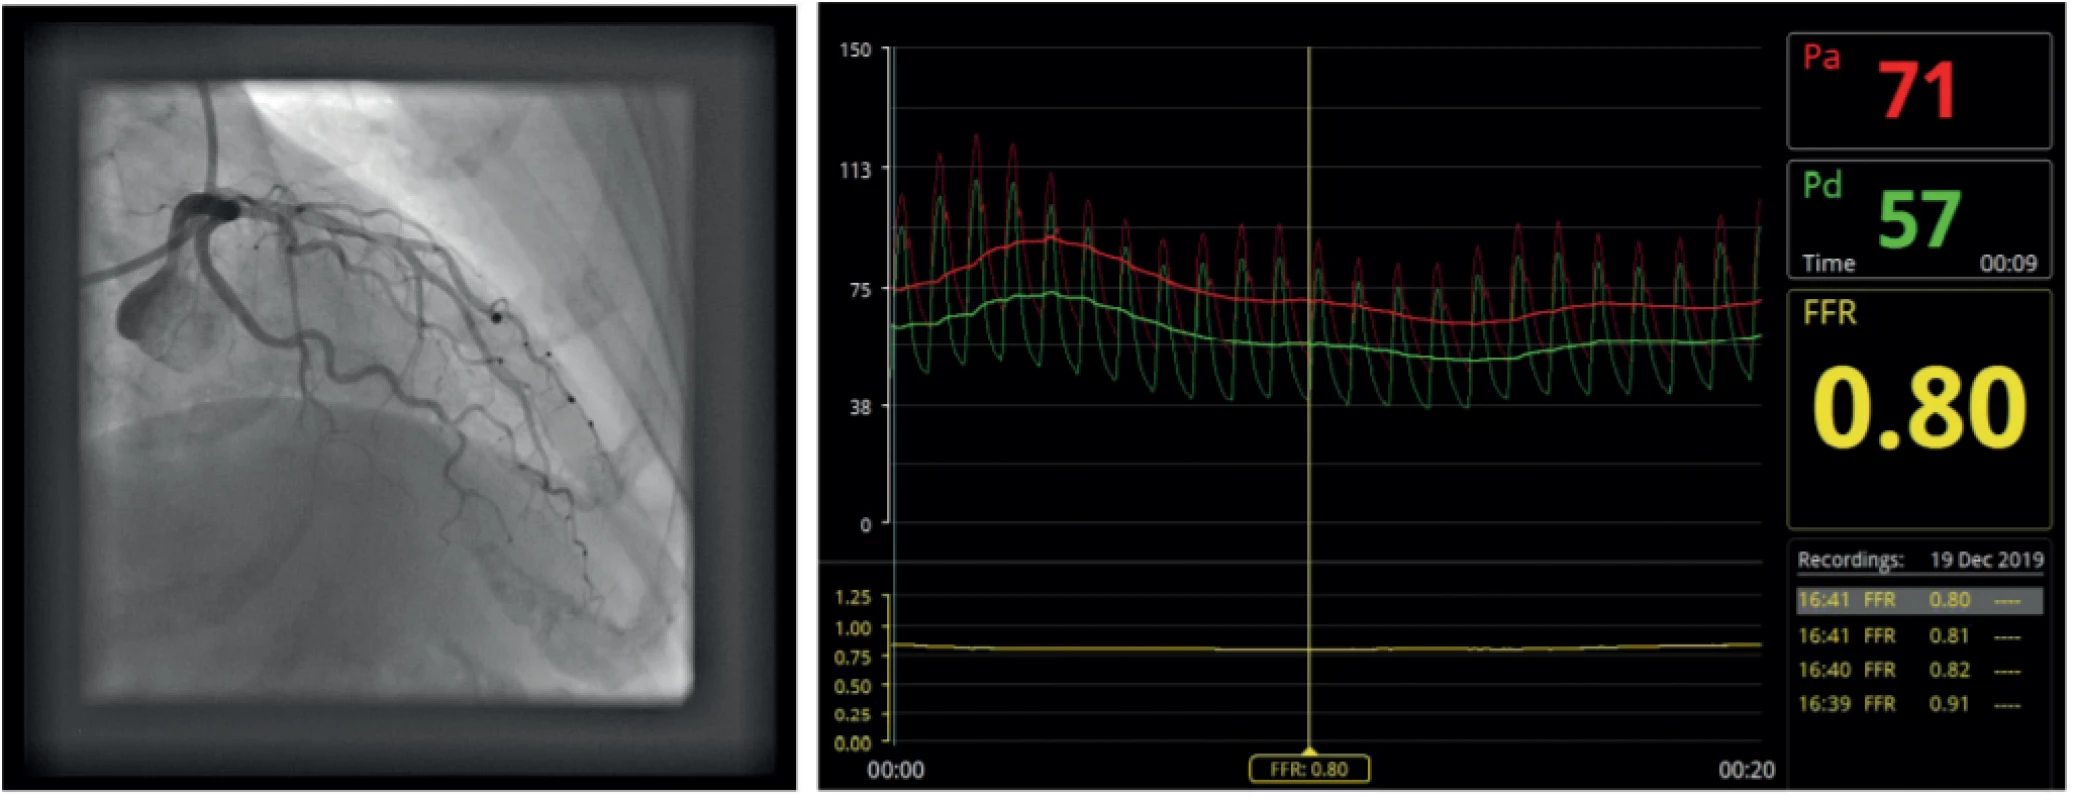 Difuzní postižení ramus interventricularis anterior na hranici funkční významnosti. 8a – angiografie; 8F – FFR; 8c – intrakoronární optická koherentní tomografie s podélným obrazem a vybranými příčnými řezy